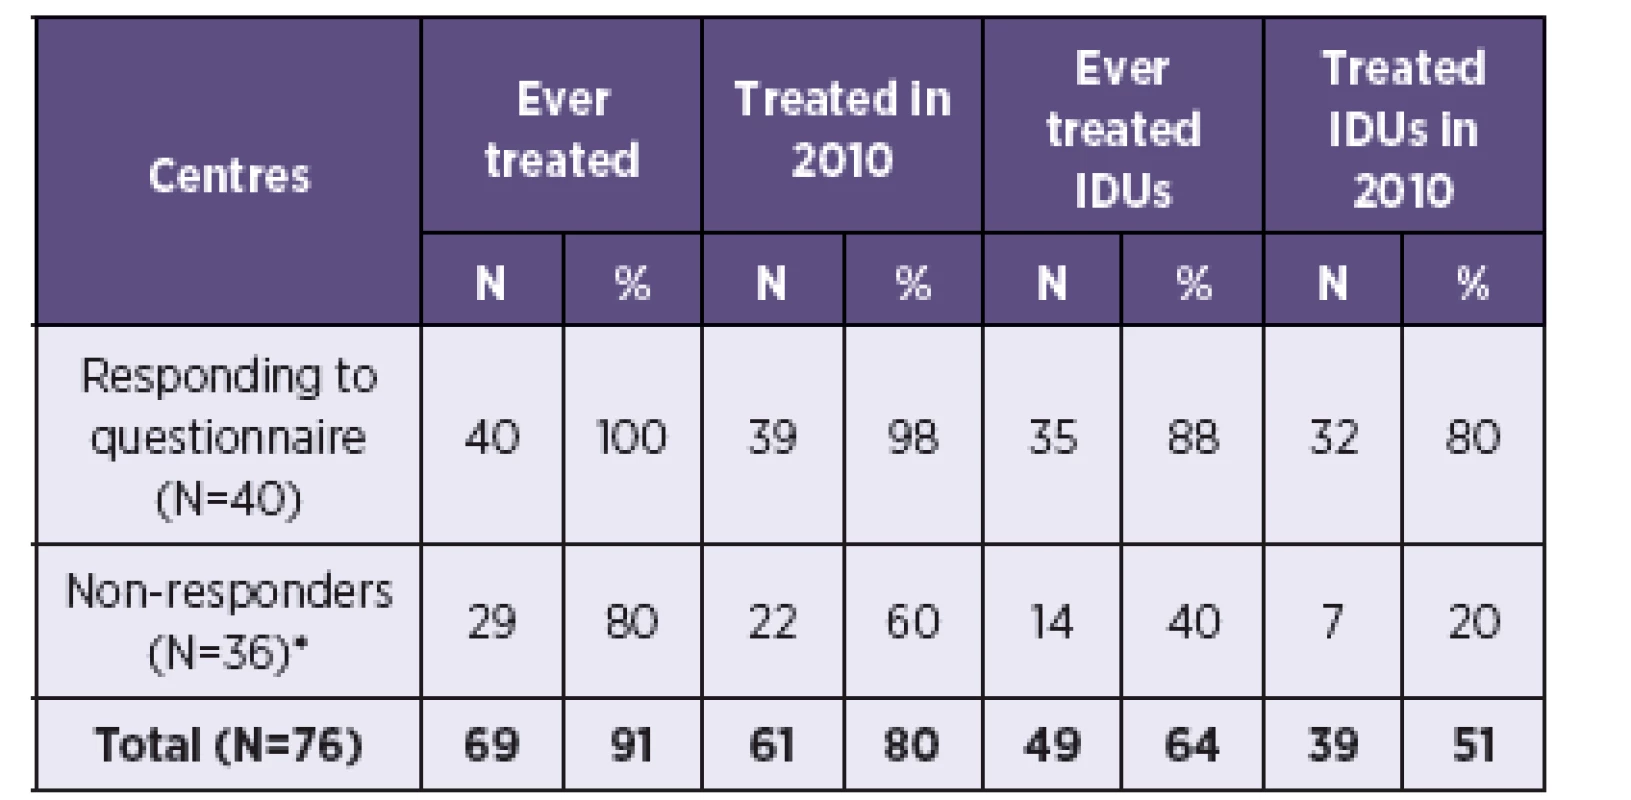 Estimated number of HCV treatment centres in the Czech Republic
Tabulka 1. Odhadovaný počet center pro léčbu VHC v České republice